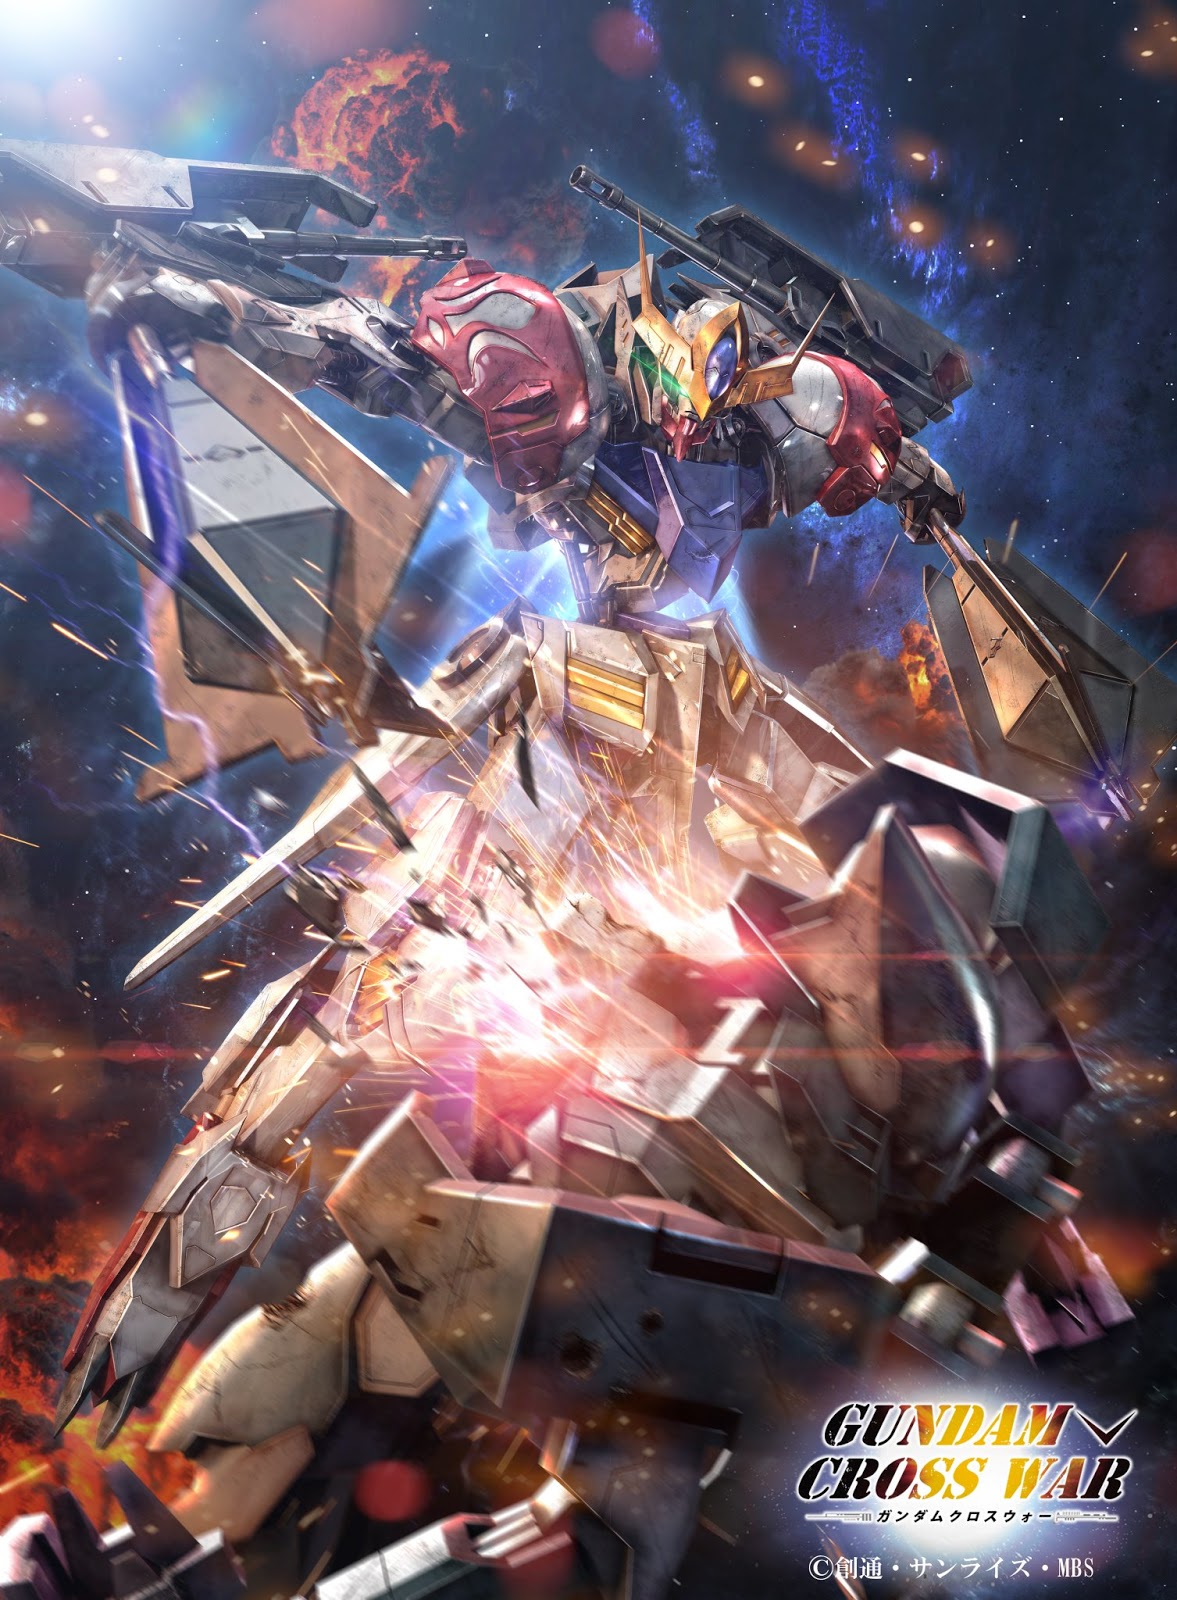 More Wallpaper Collections - Gundam Cross War Phone , HD Wallpaper & Backgrounds